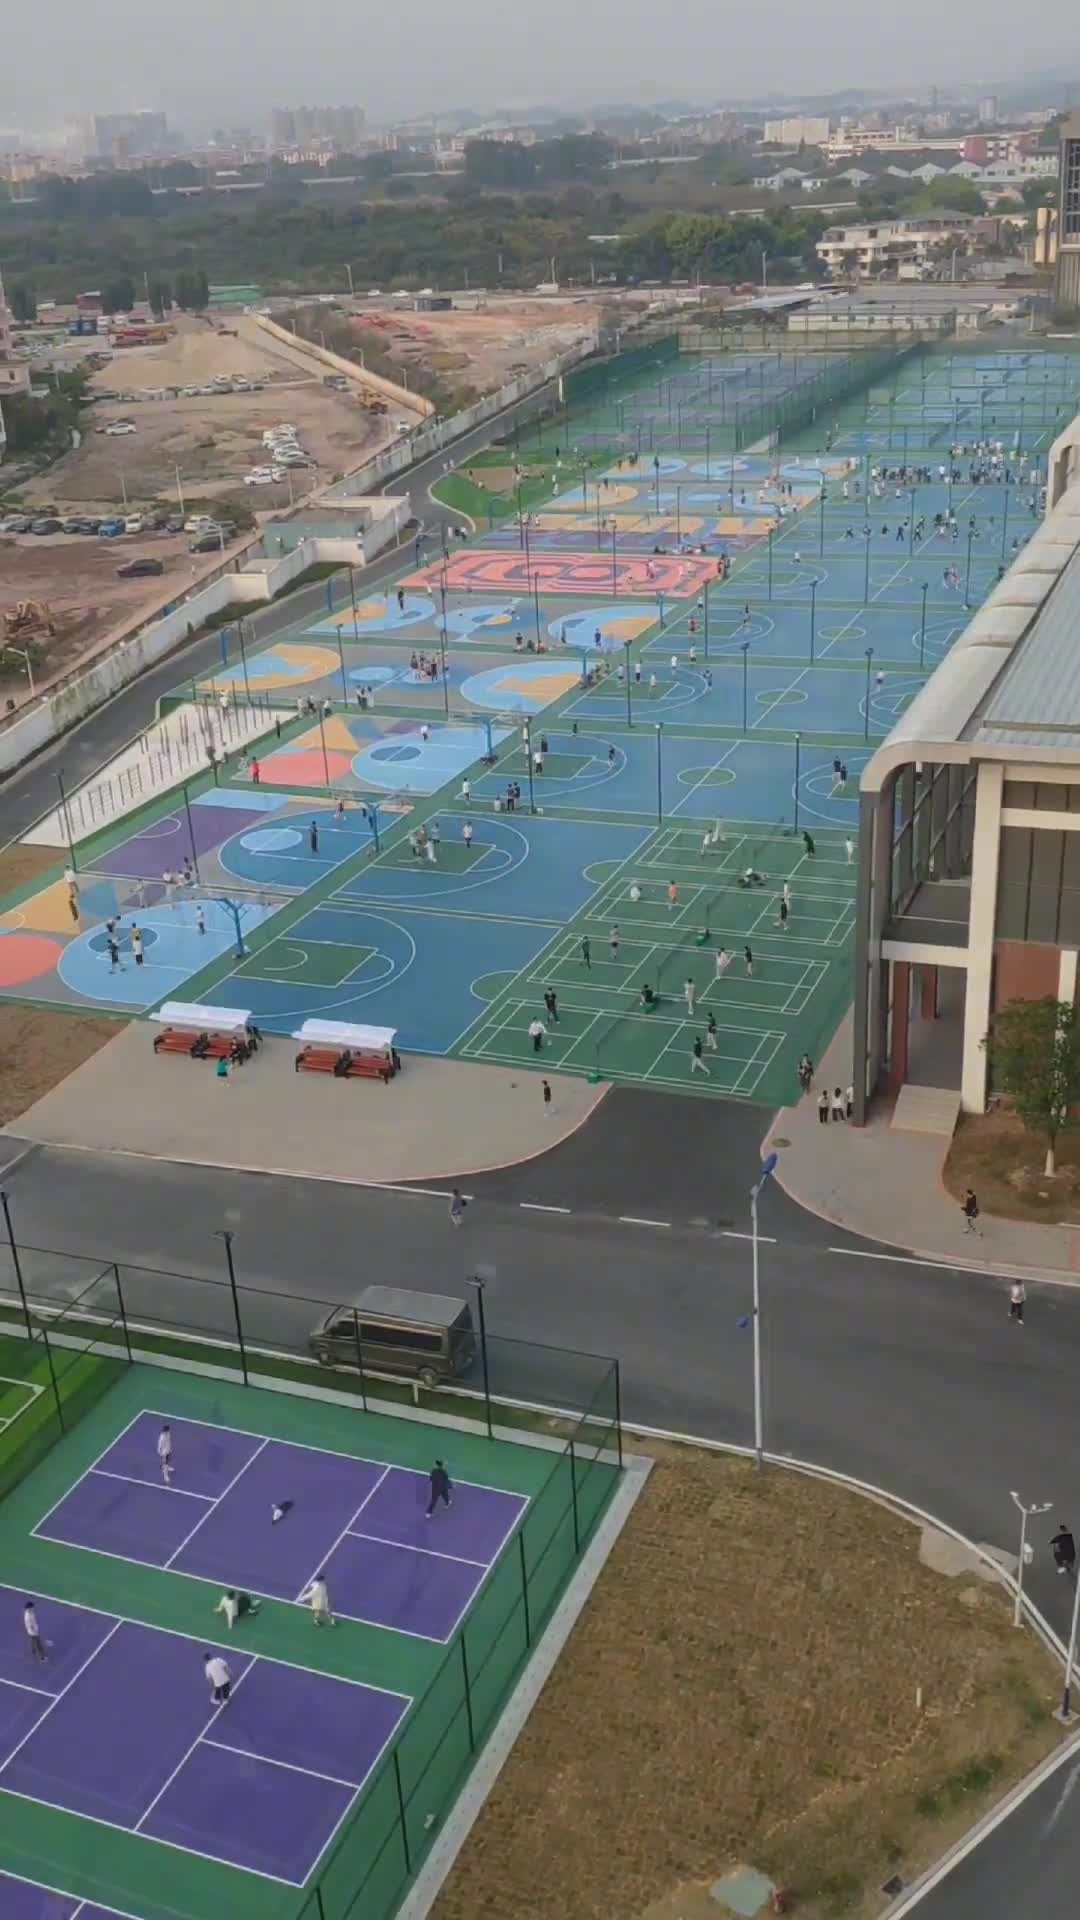 广东白云学院运动场一幕 朝气蓬勃的篮球场真好啊！